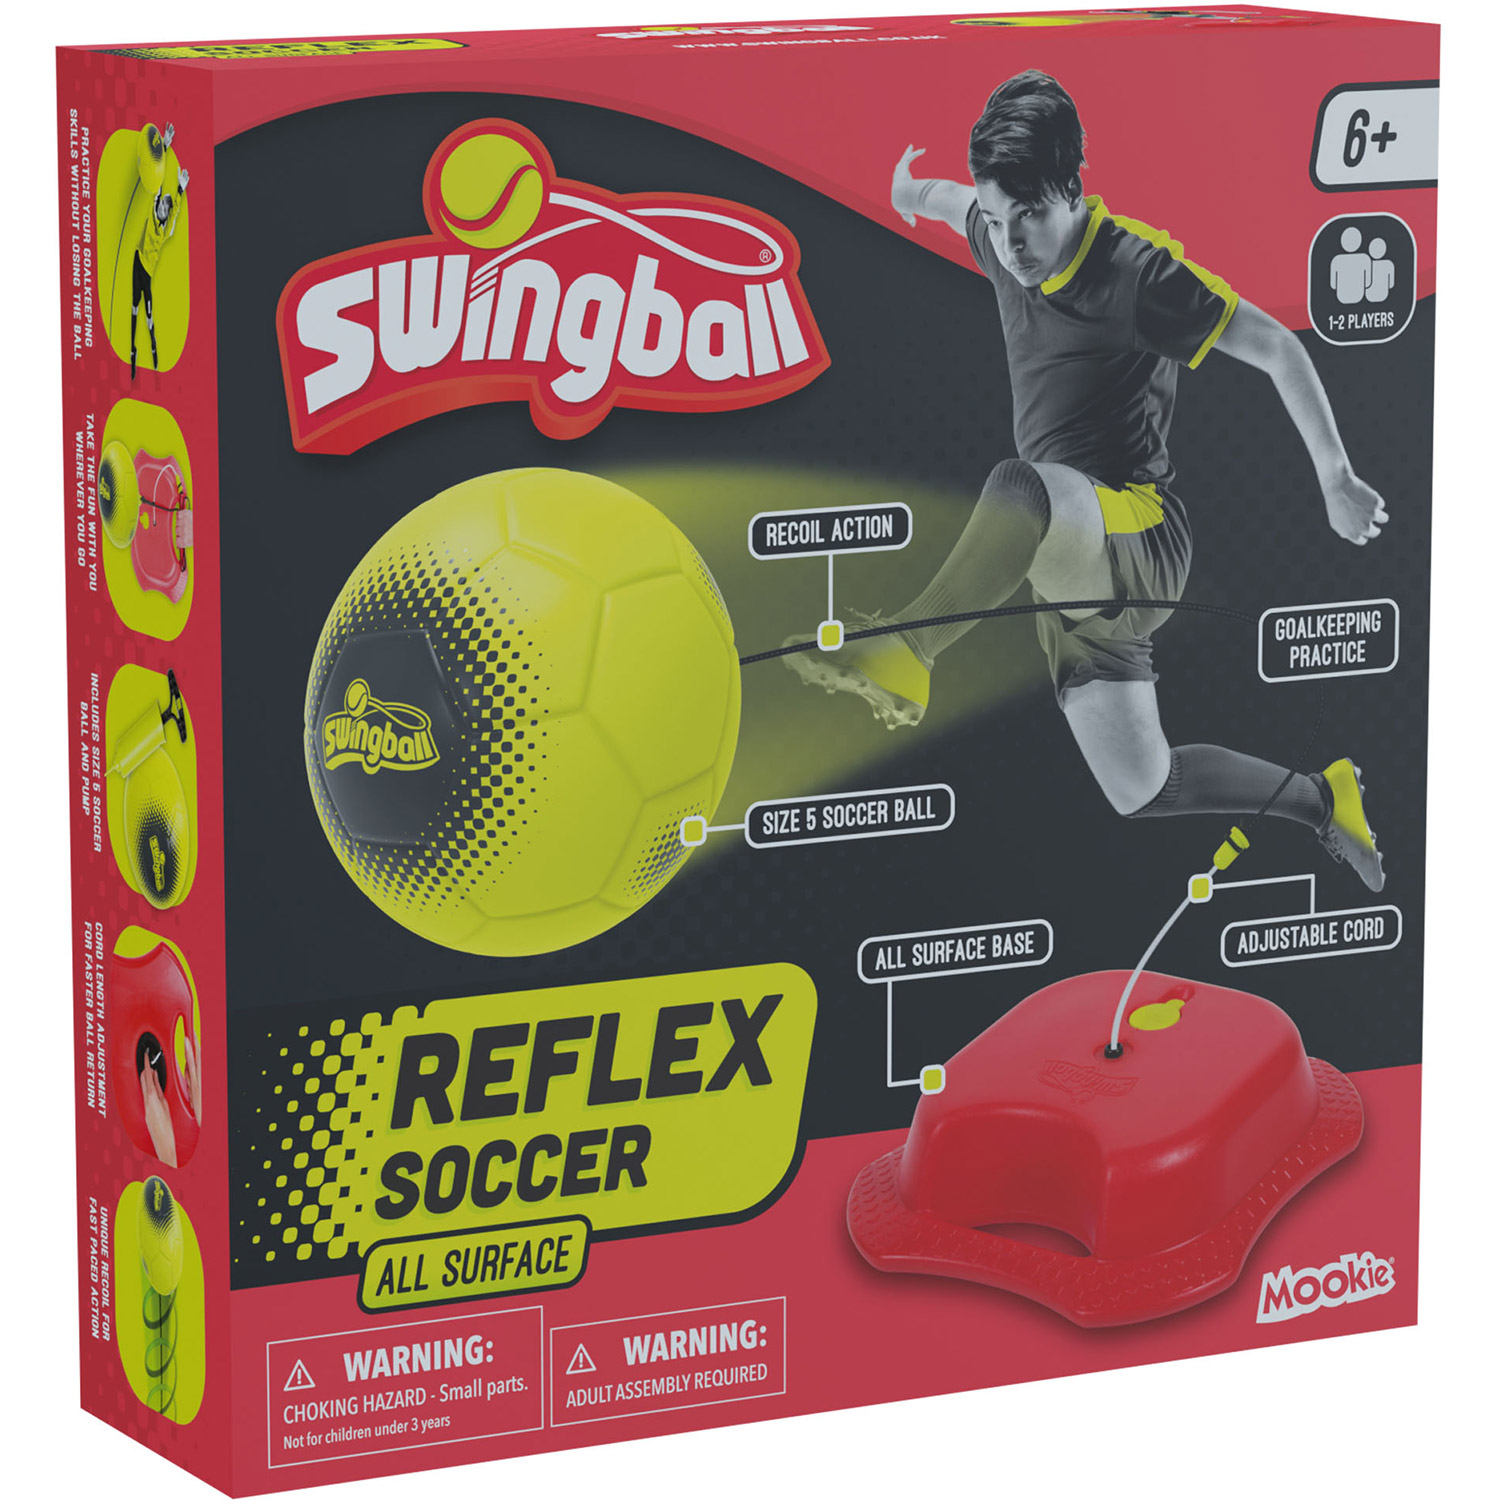 Swingball Reflex soccer game